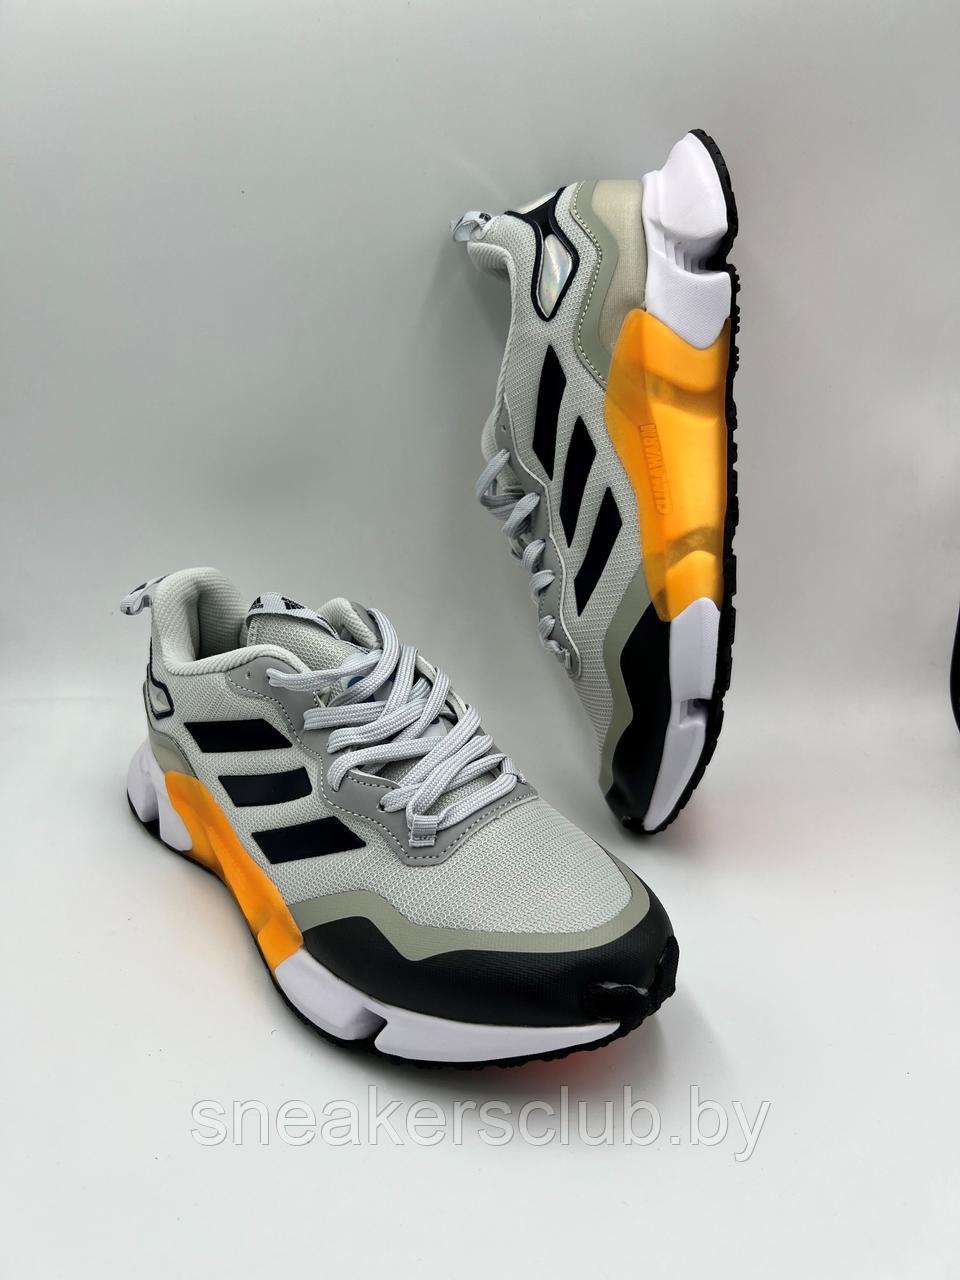 Кроссовки мужские Adidas Climawarm Shoes/ повседневные / весенние / летние  / для спорта